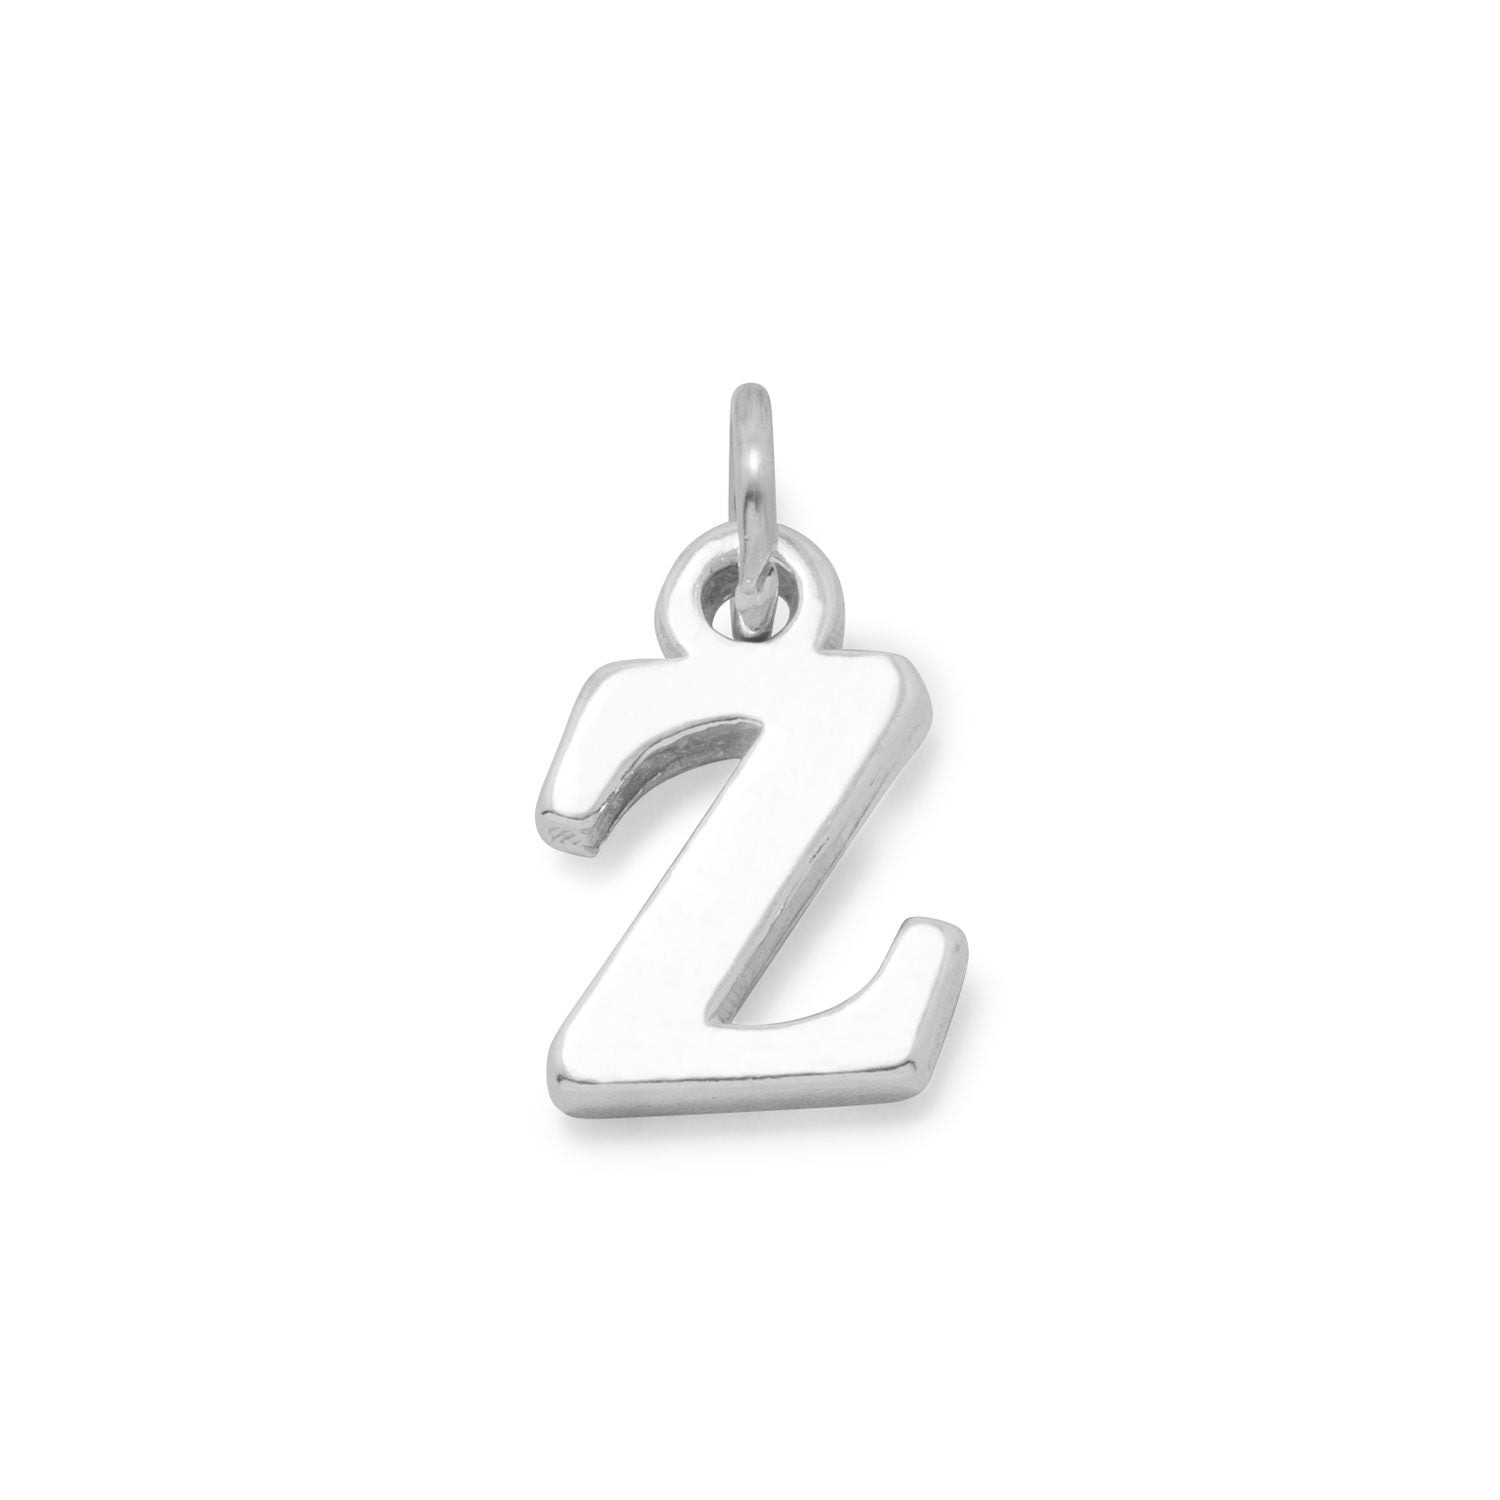 Greek Alphabet Letter Charm - Zeta